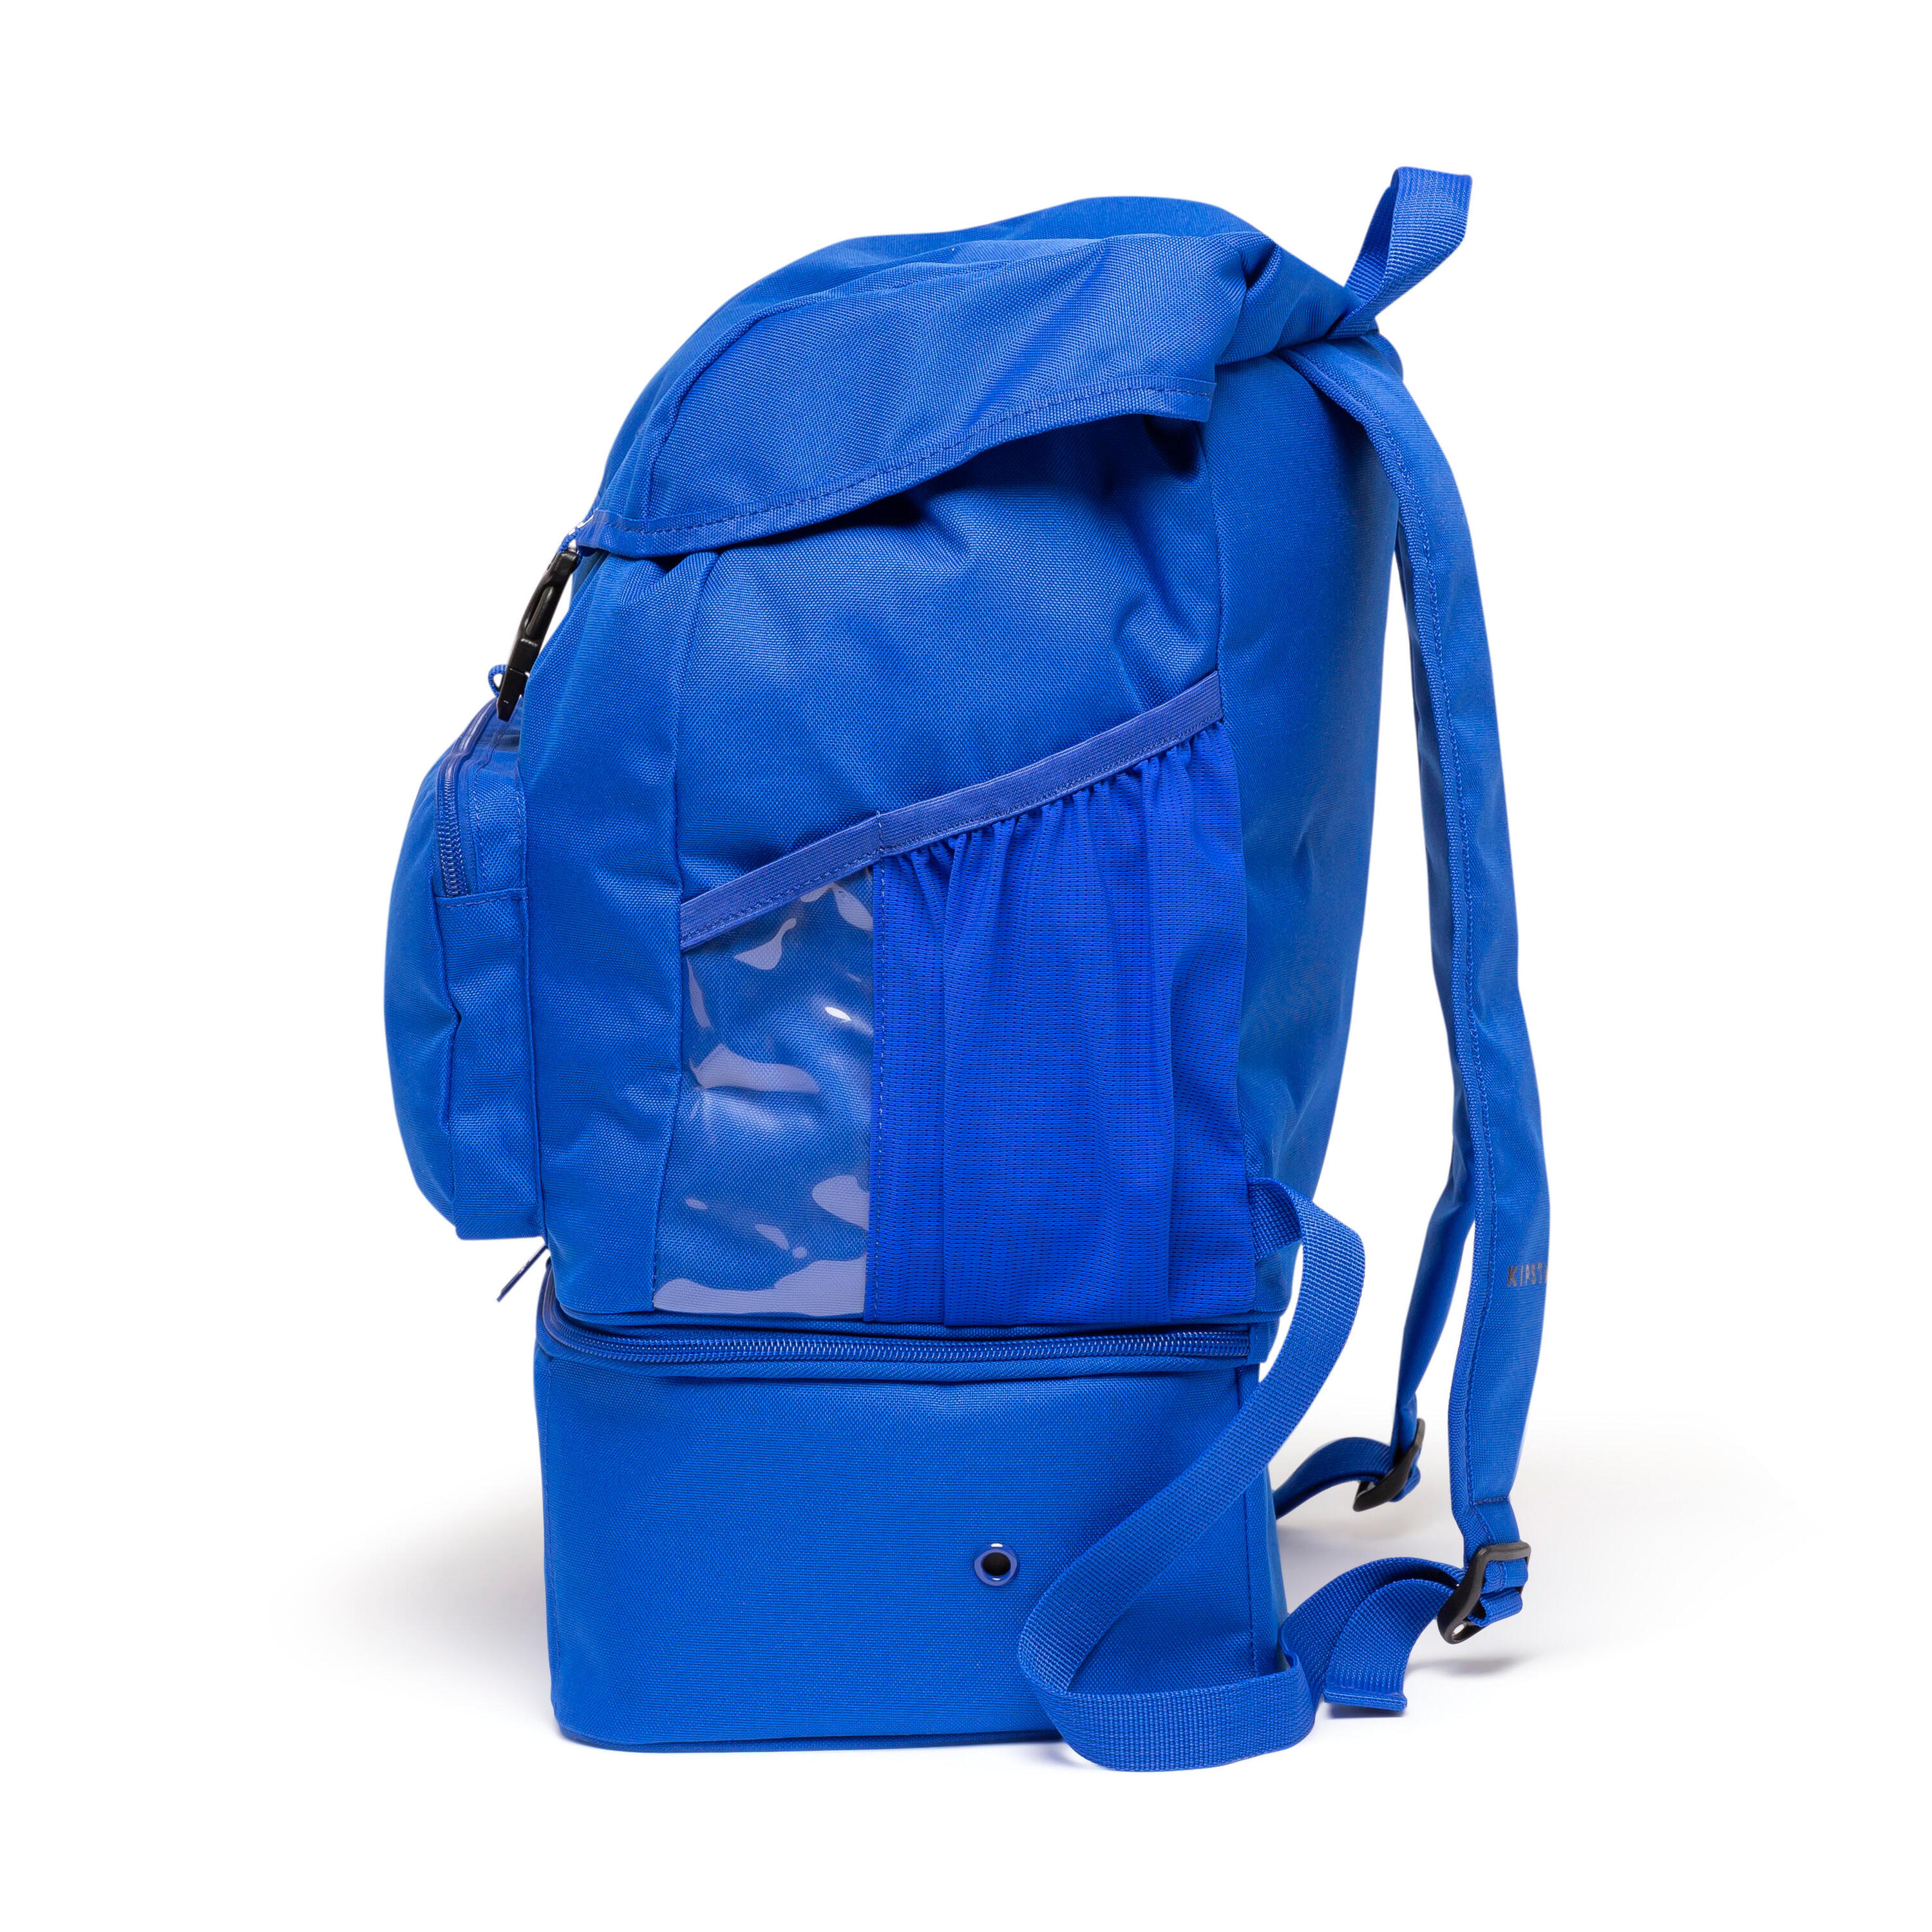 30 L Backpack Hardcase - Royal Blue 7/8